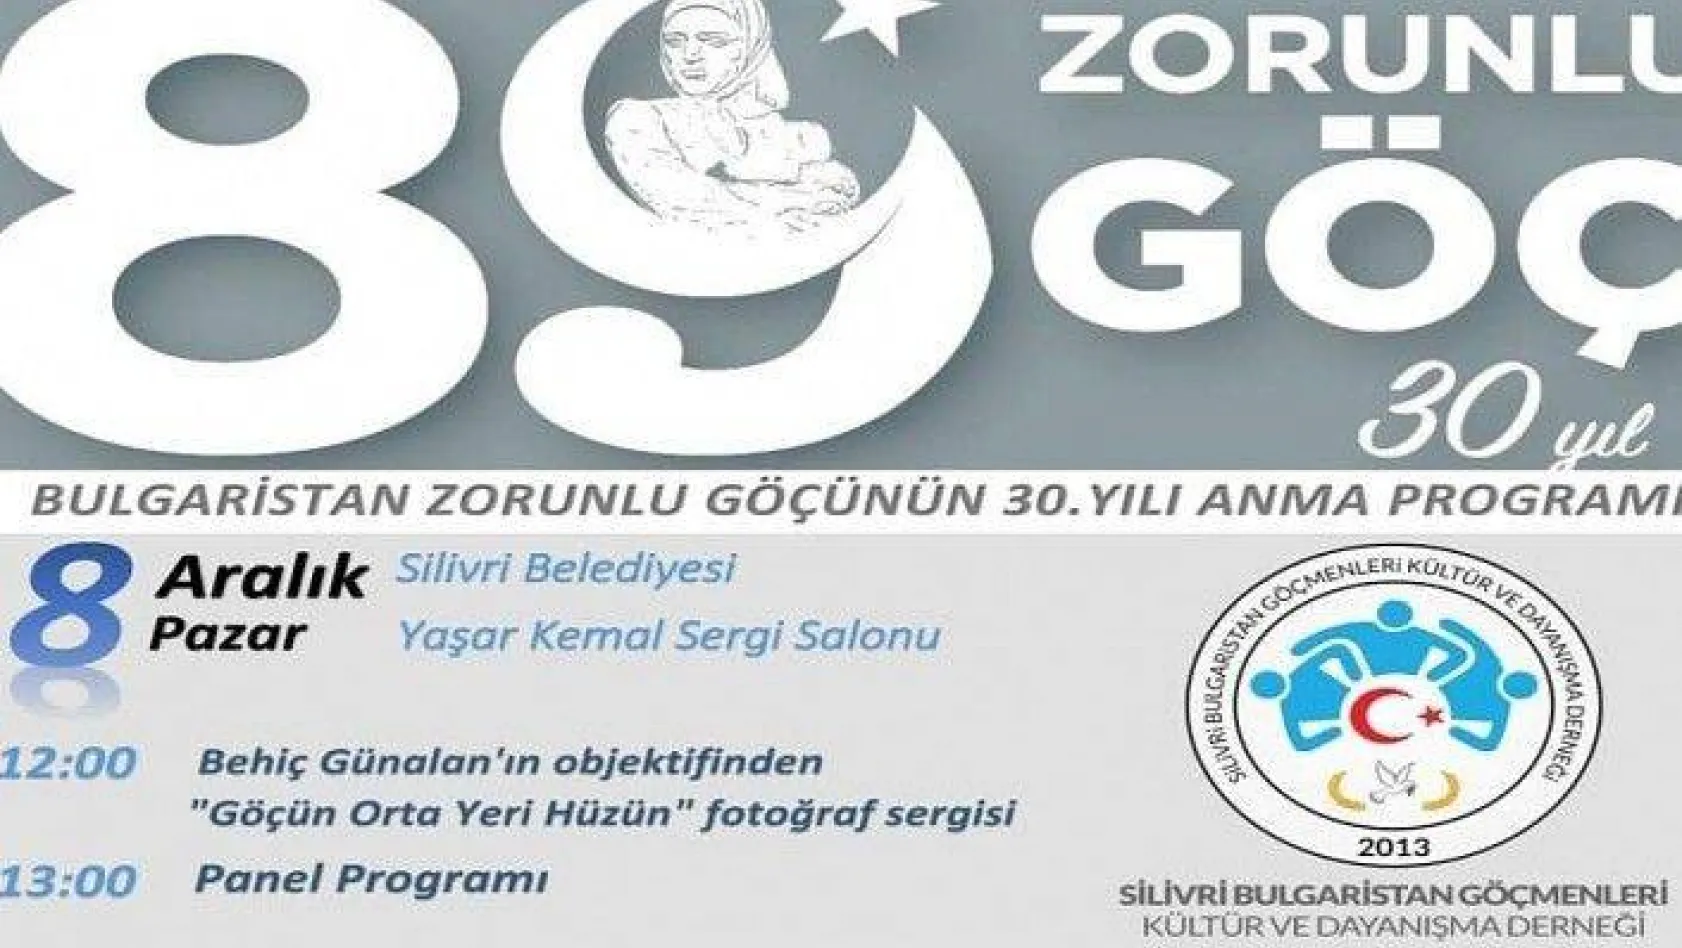 Silivri Bulgaristan Göçmenleri Kültür ve Dayanışma Derneği Yönetim Kurulu davetiyesi